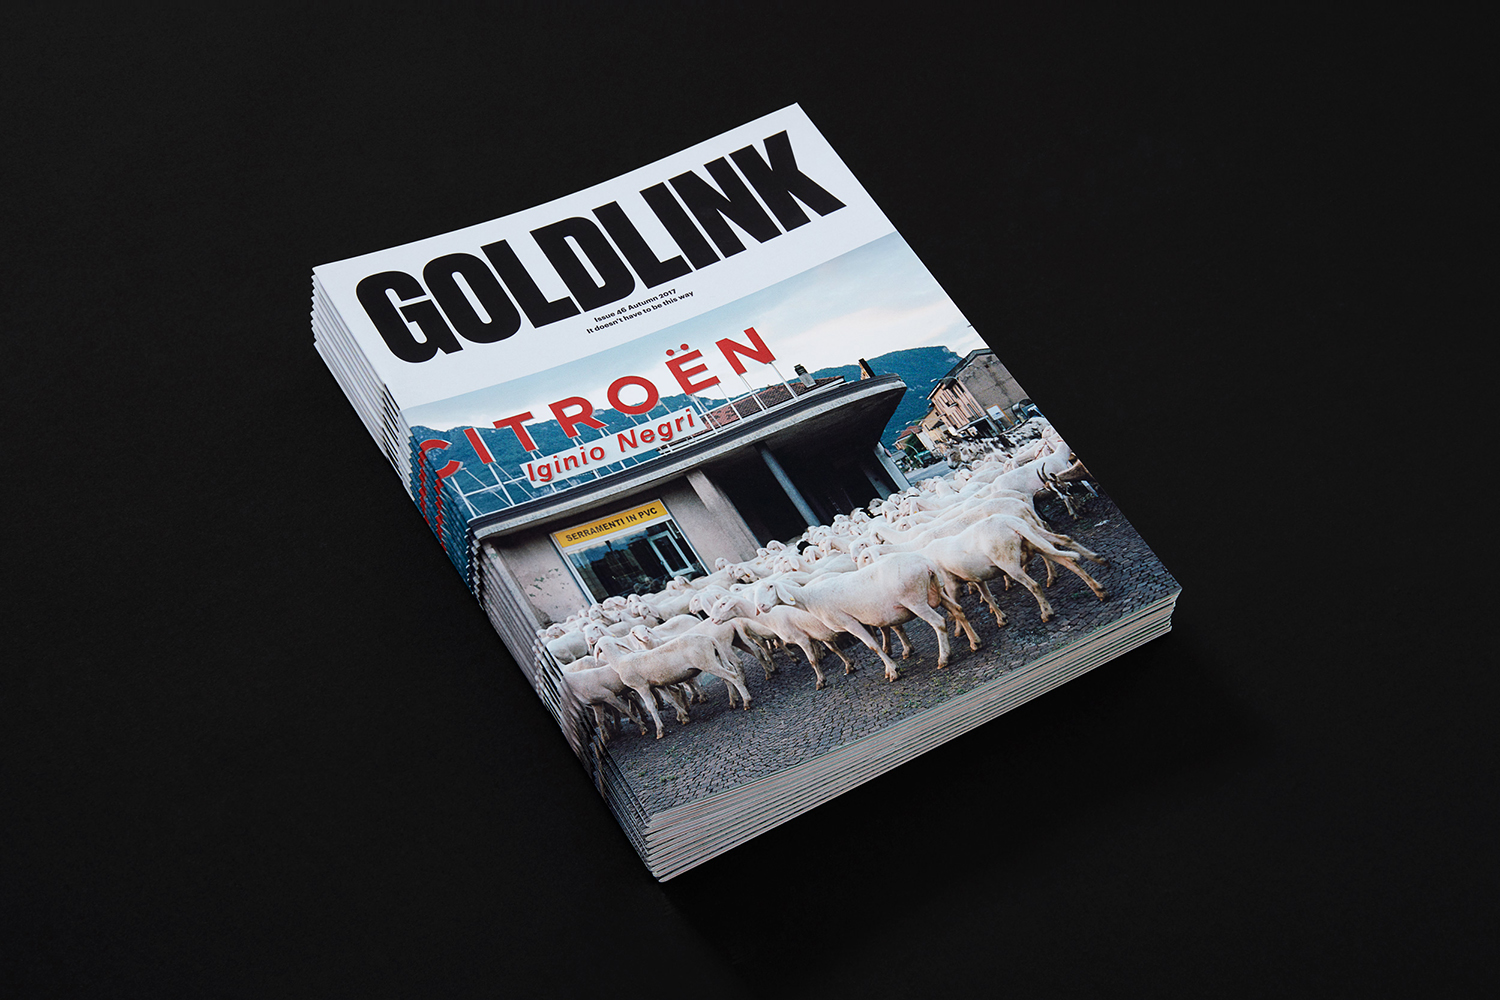 New design by Spy for Goldsmiths' alumni magazine Goldlink